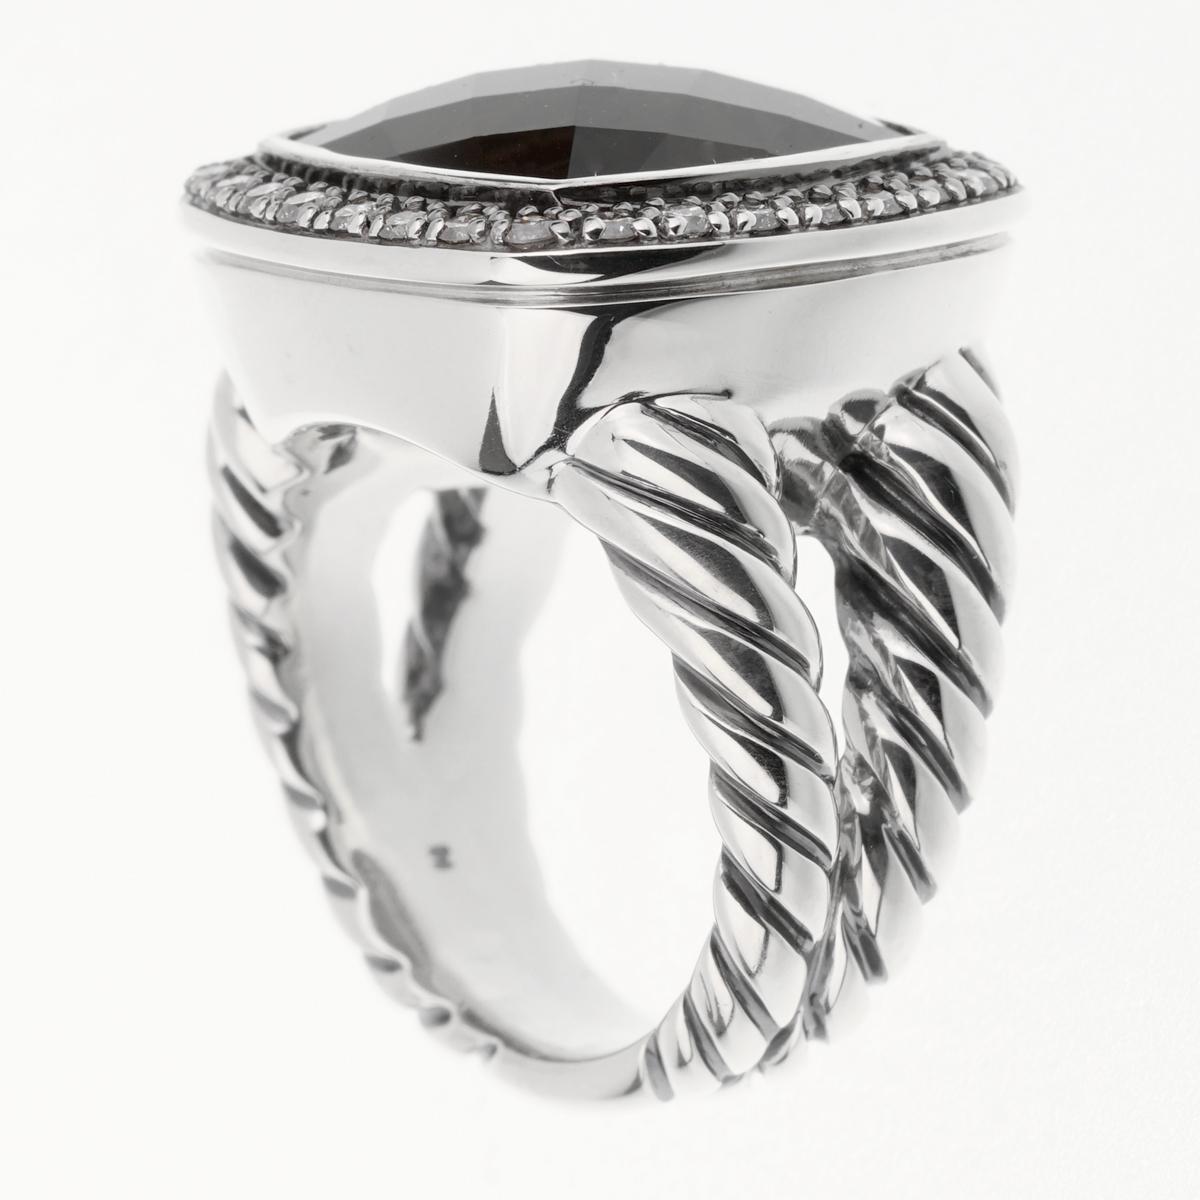 Ein schicker Ring von David Yurman mit einem großen Rauchquarz, umhüllt von runden Diamanten im Brillantschliff, gefasst in Sterlingsilber.